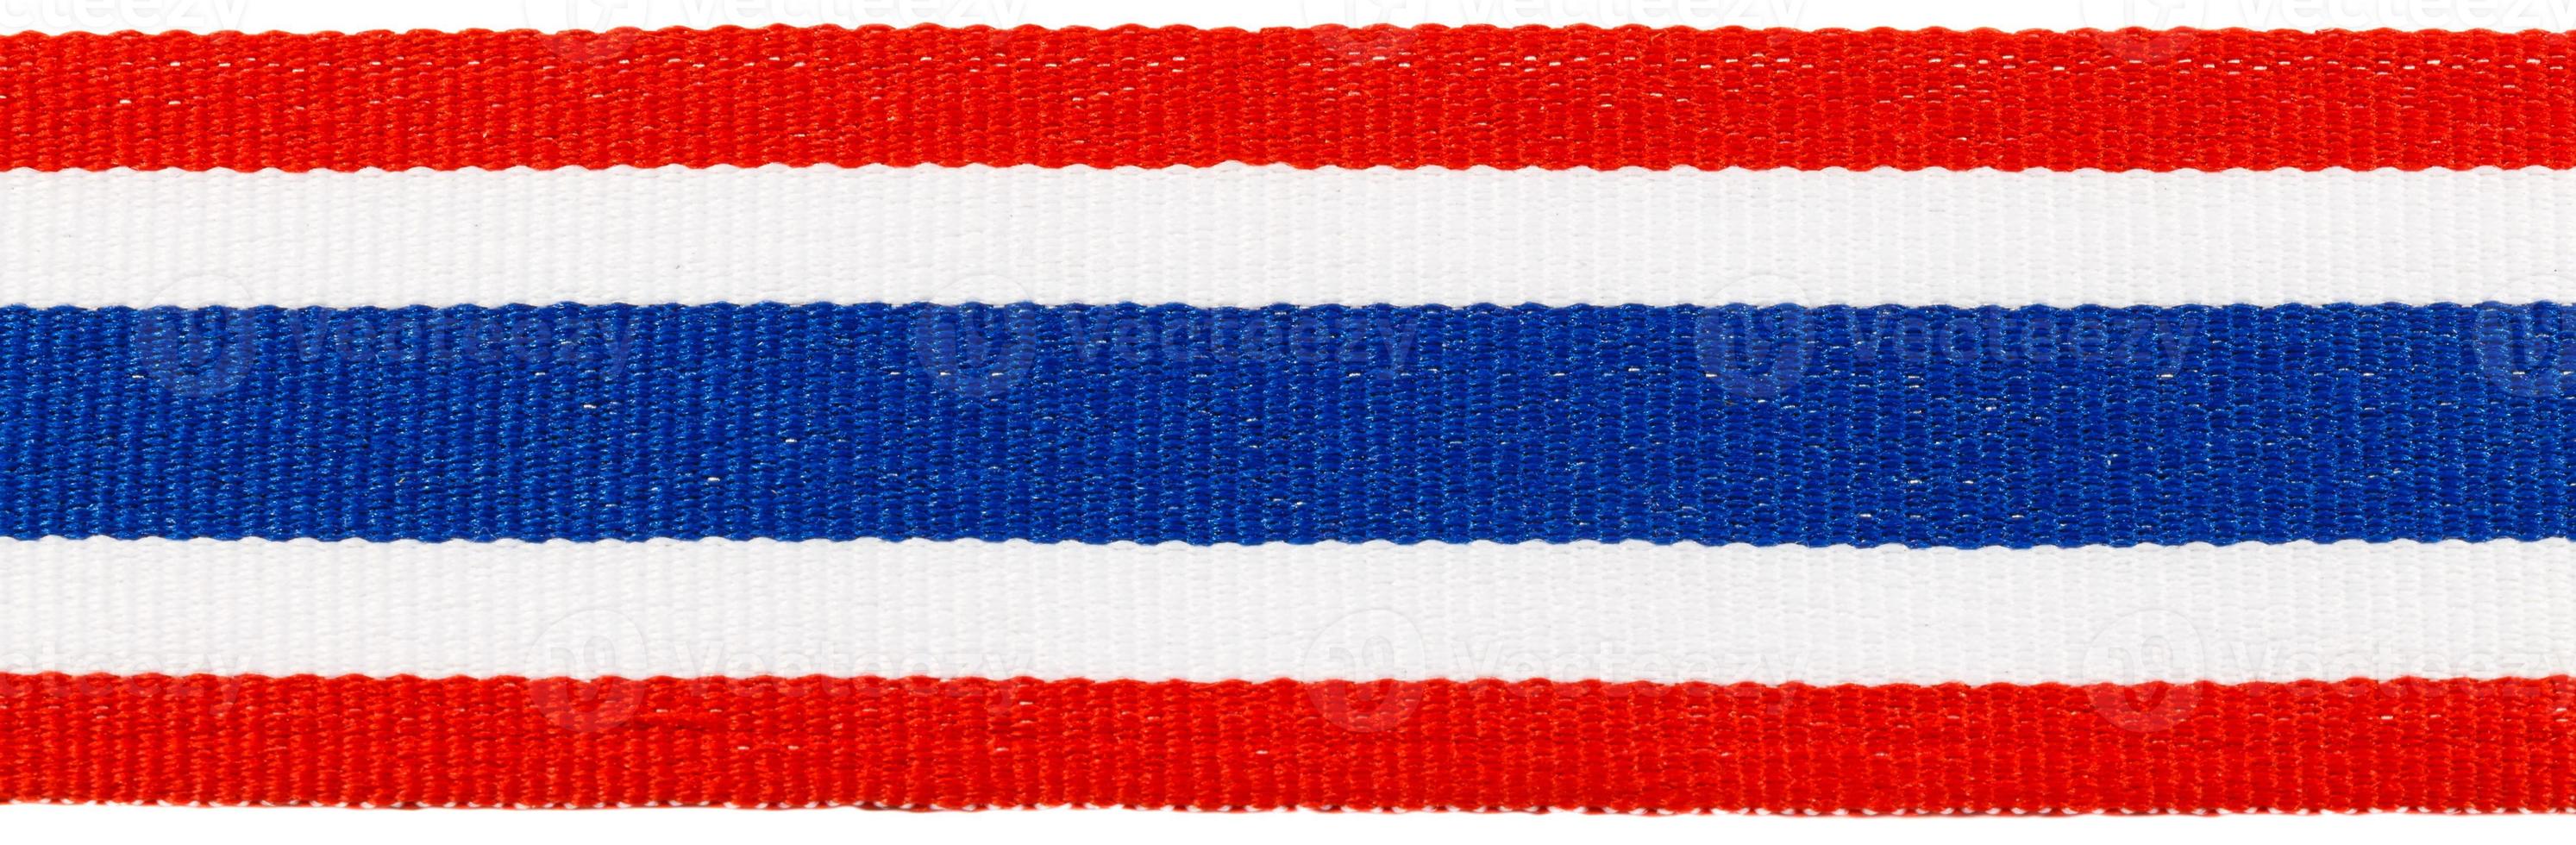 Band mit thailändischem Flaggenmuster foto